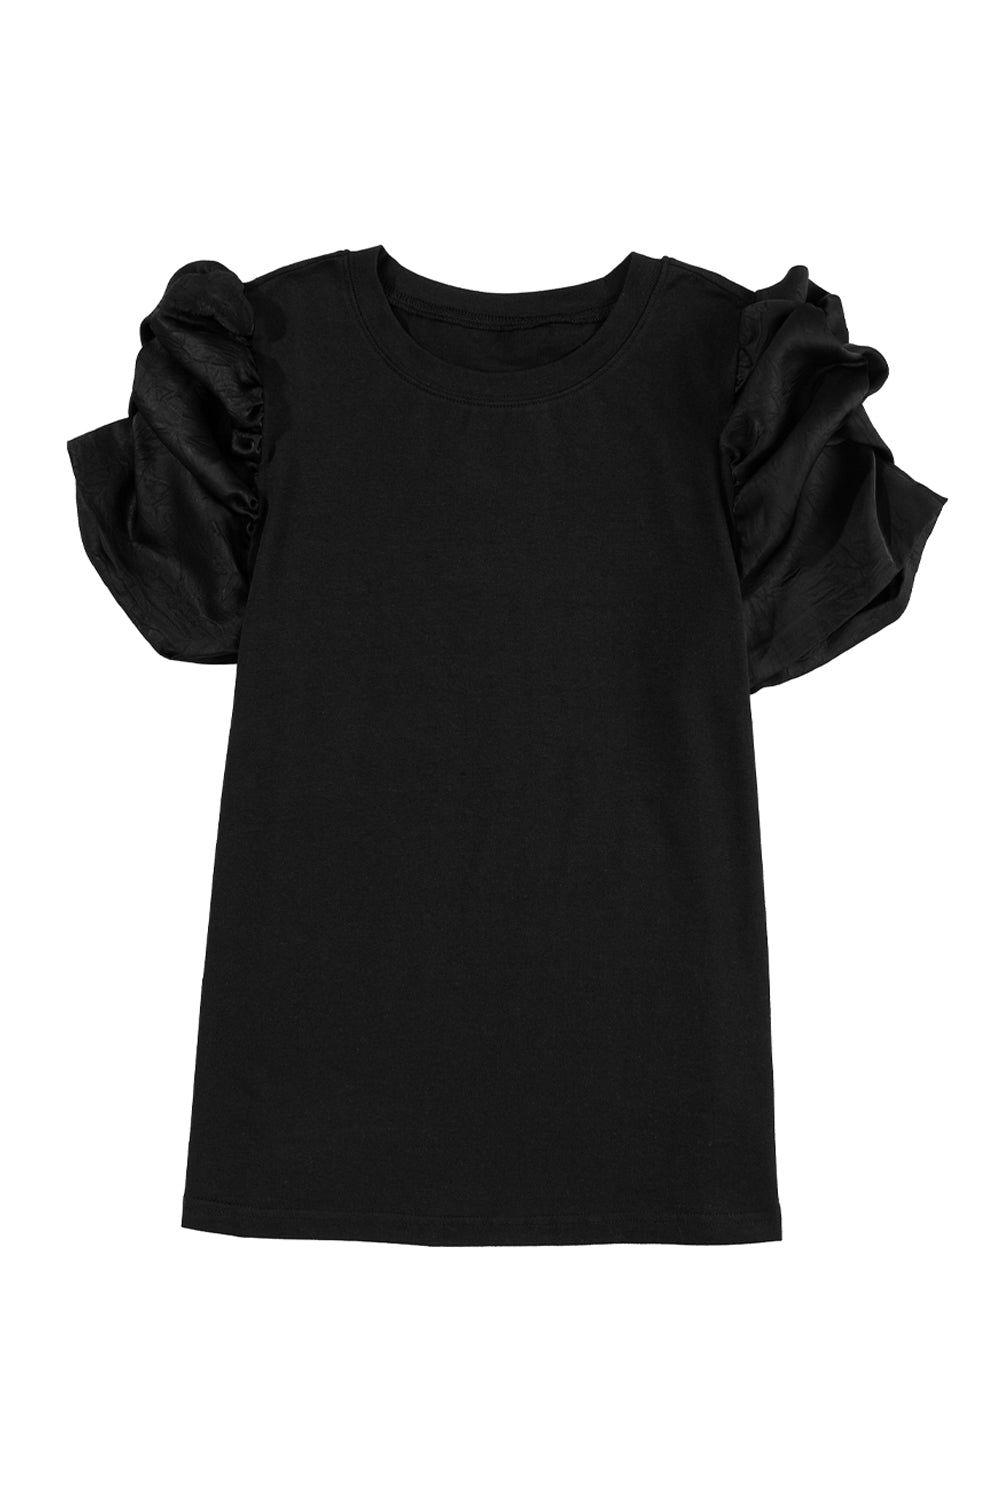 T-shirt girocollo nera con maniche a sbuffo e volant